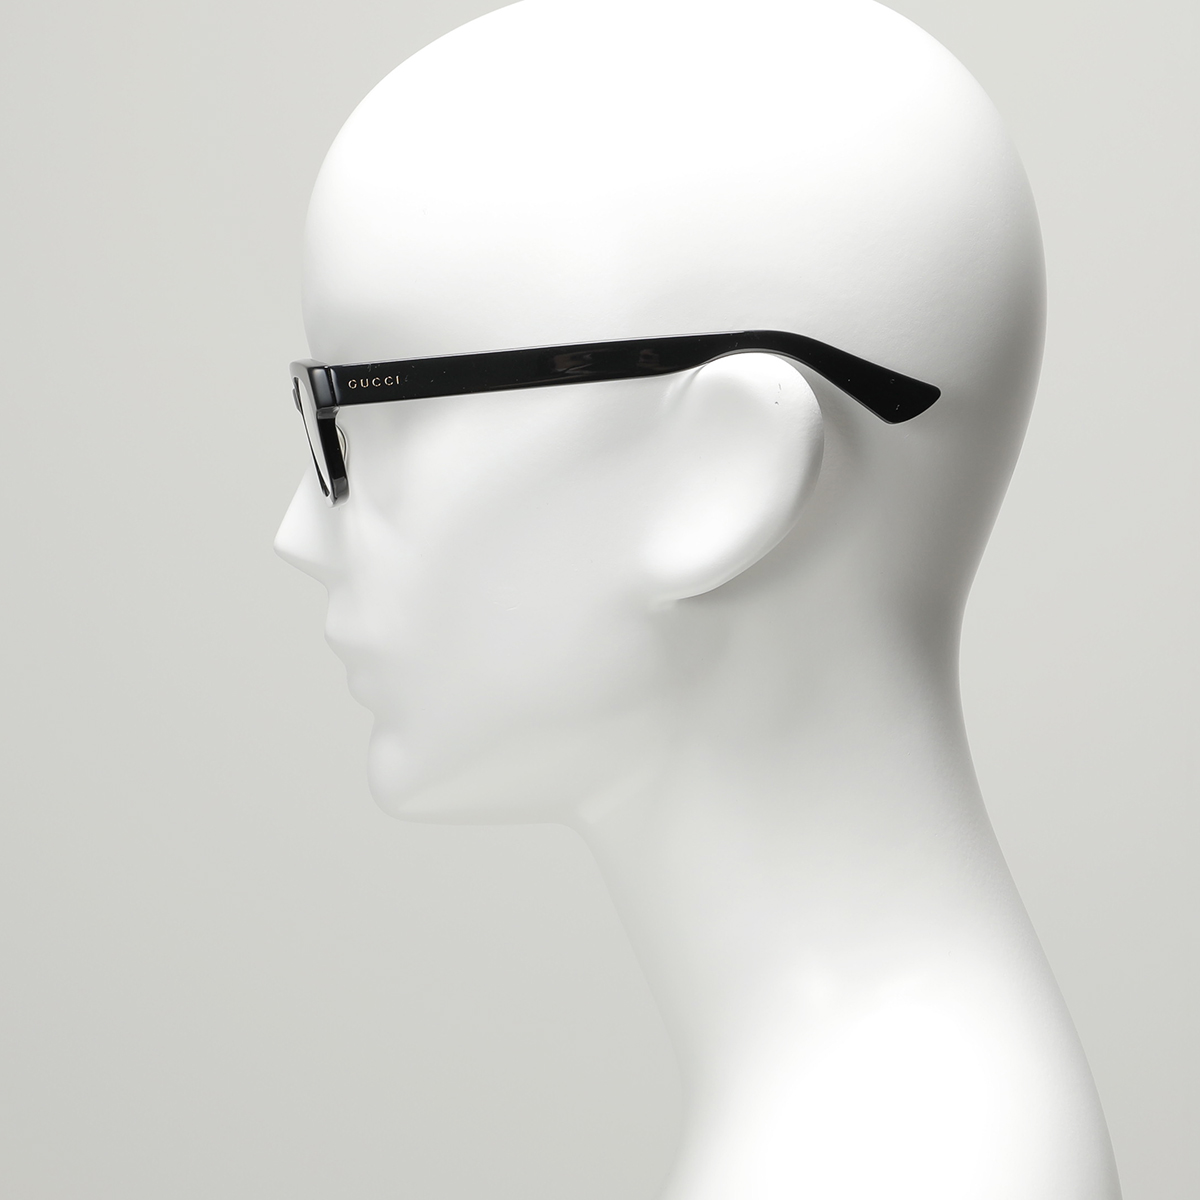 GUCCI グッチ メガネ GG0928O メンズ 眼鏡 フレーム 伊達メガネ スクエア型 アイウェア めがね 黒縁メガネ  007/BLACK-BLACK-TRANSPARENT | インポートセレクト musee